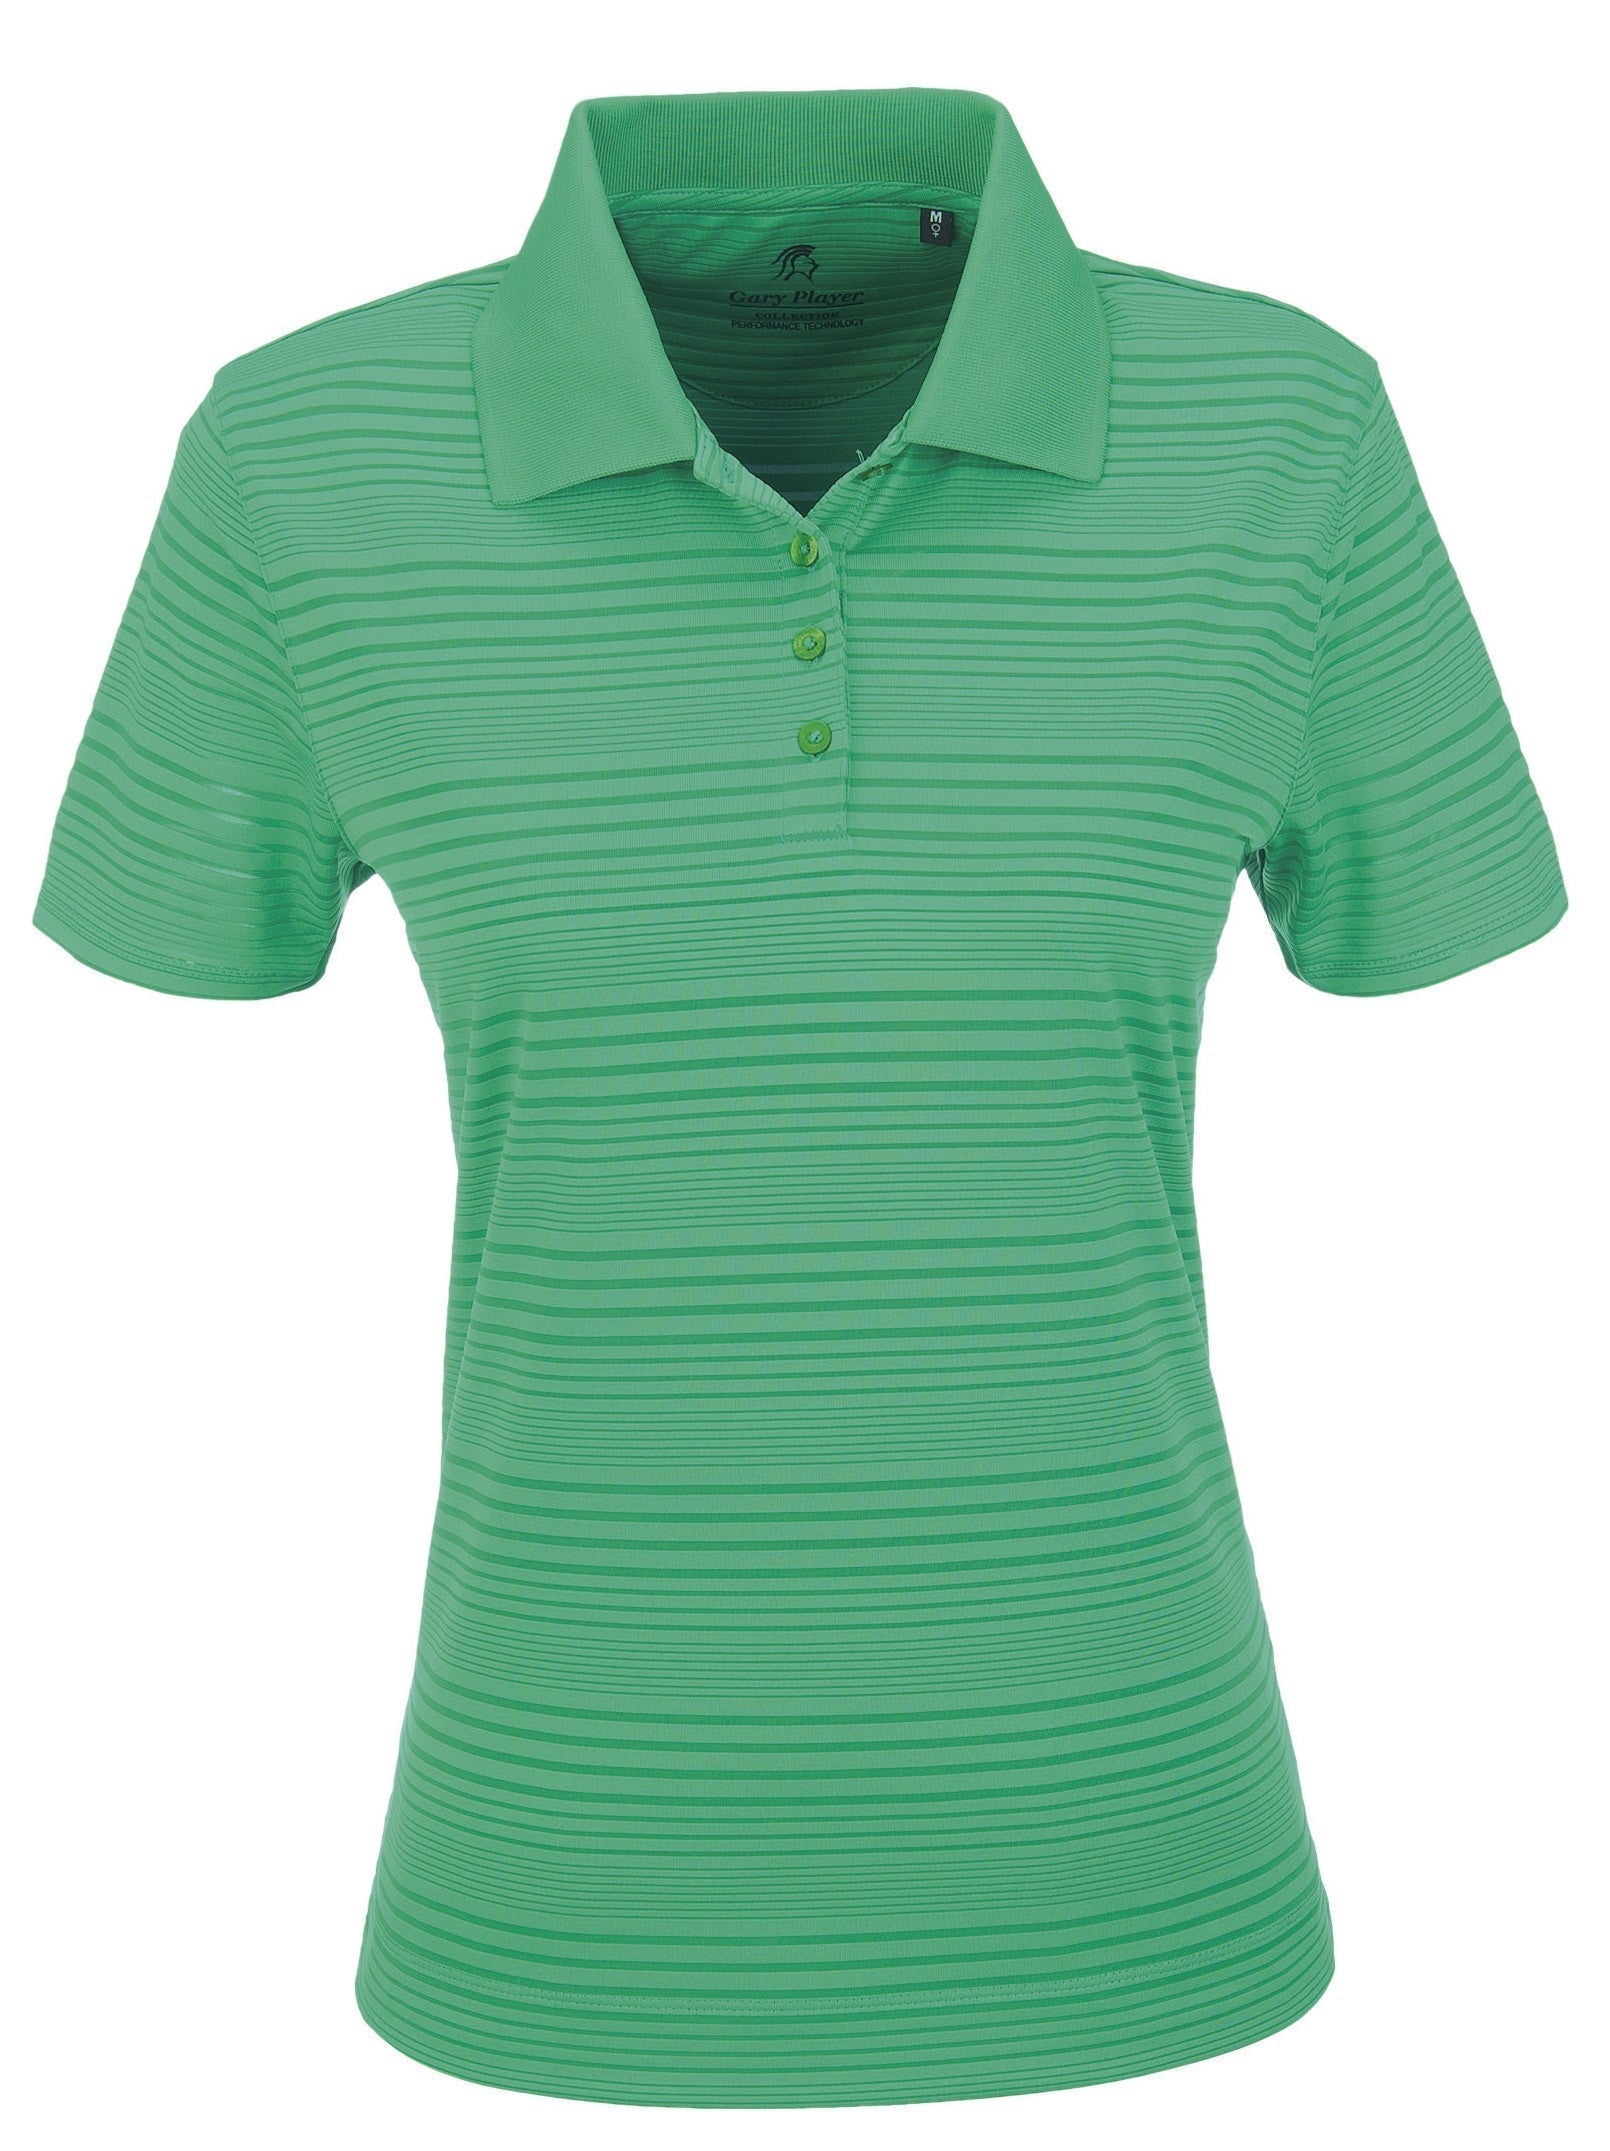 Ladies Westlake Golf Shirt - Grey Only-L-Green-G